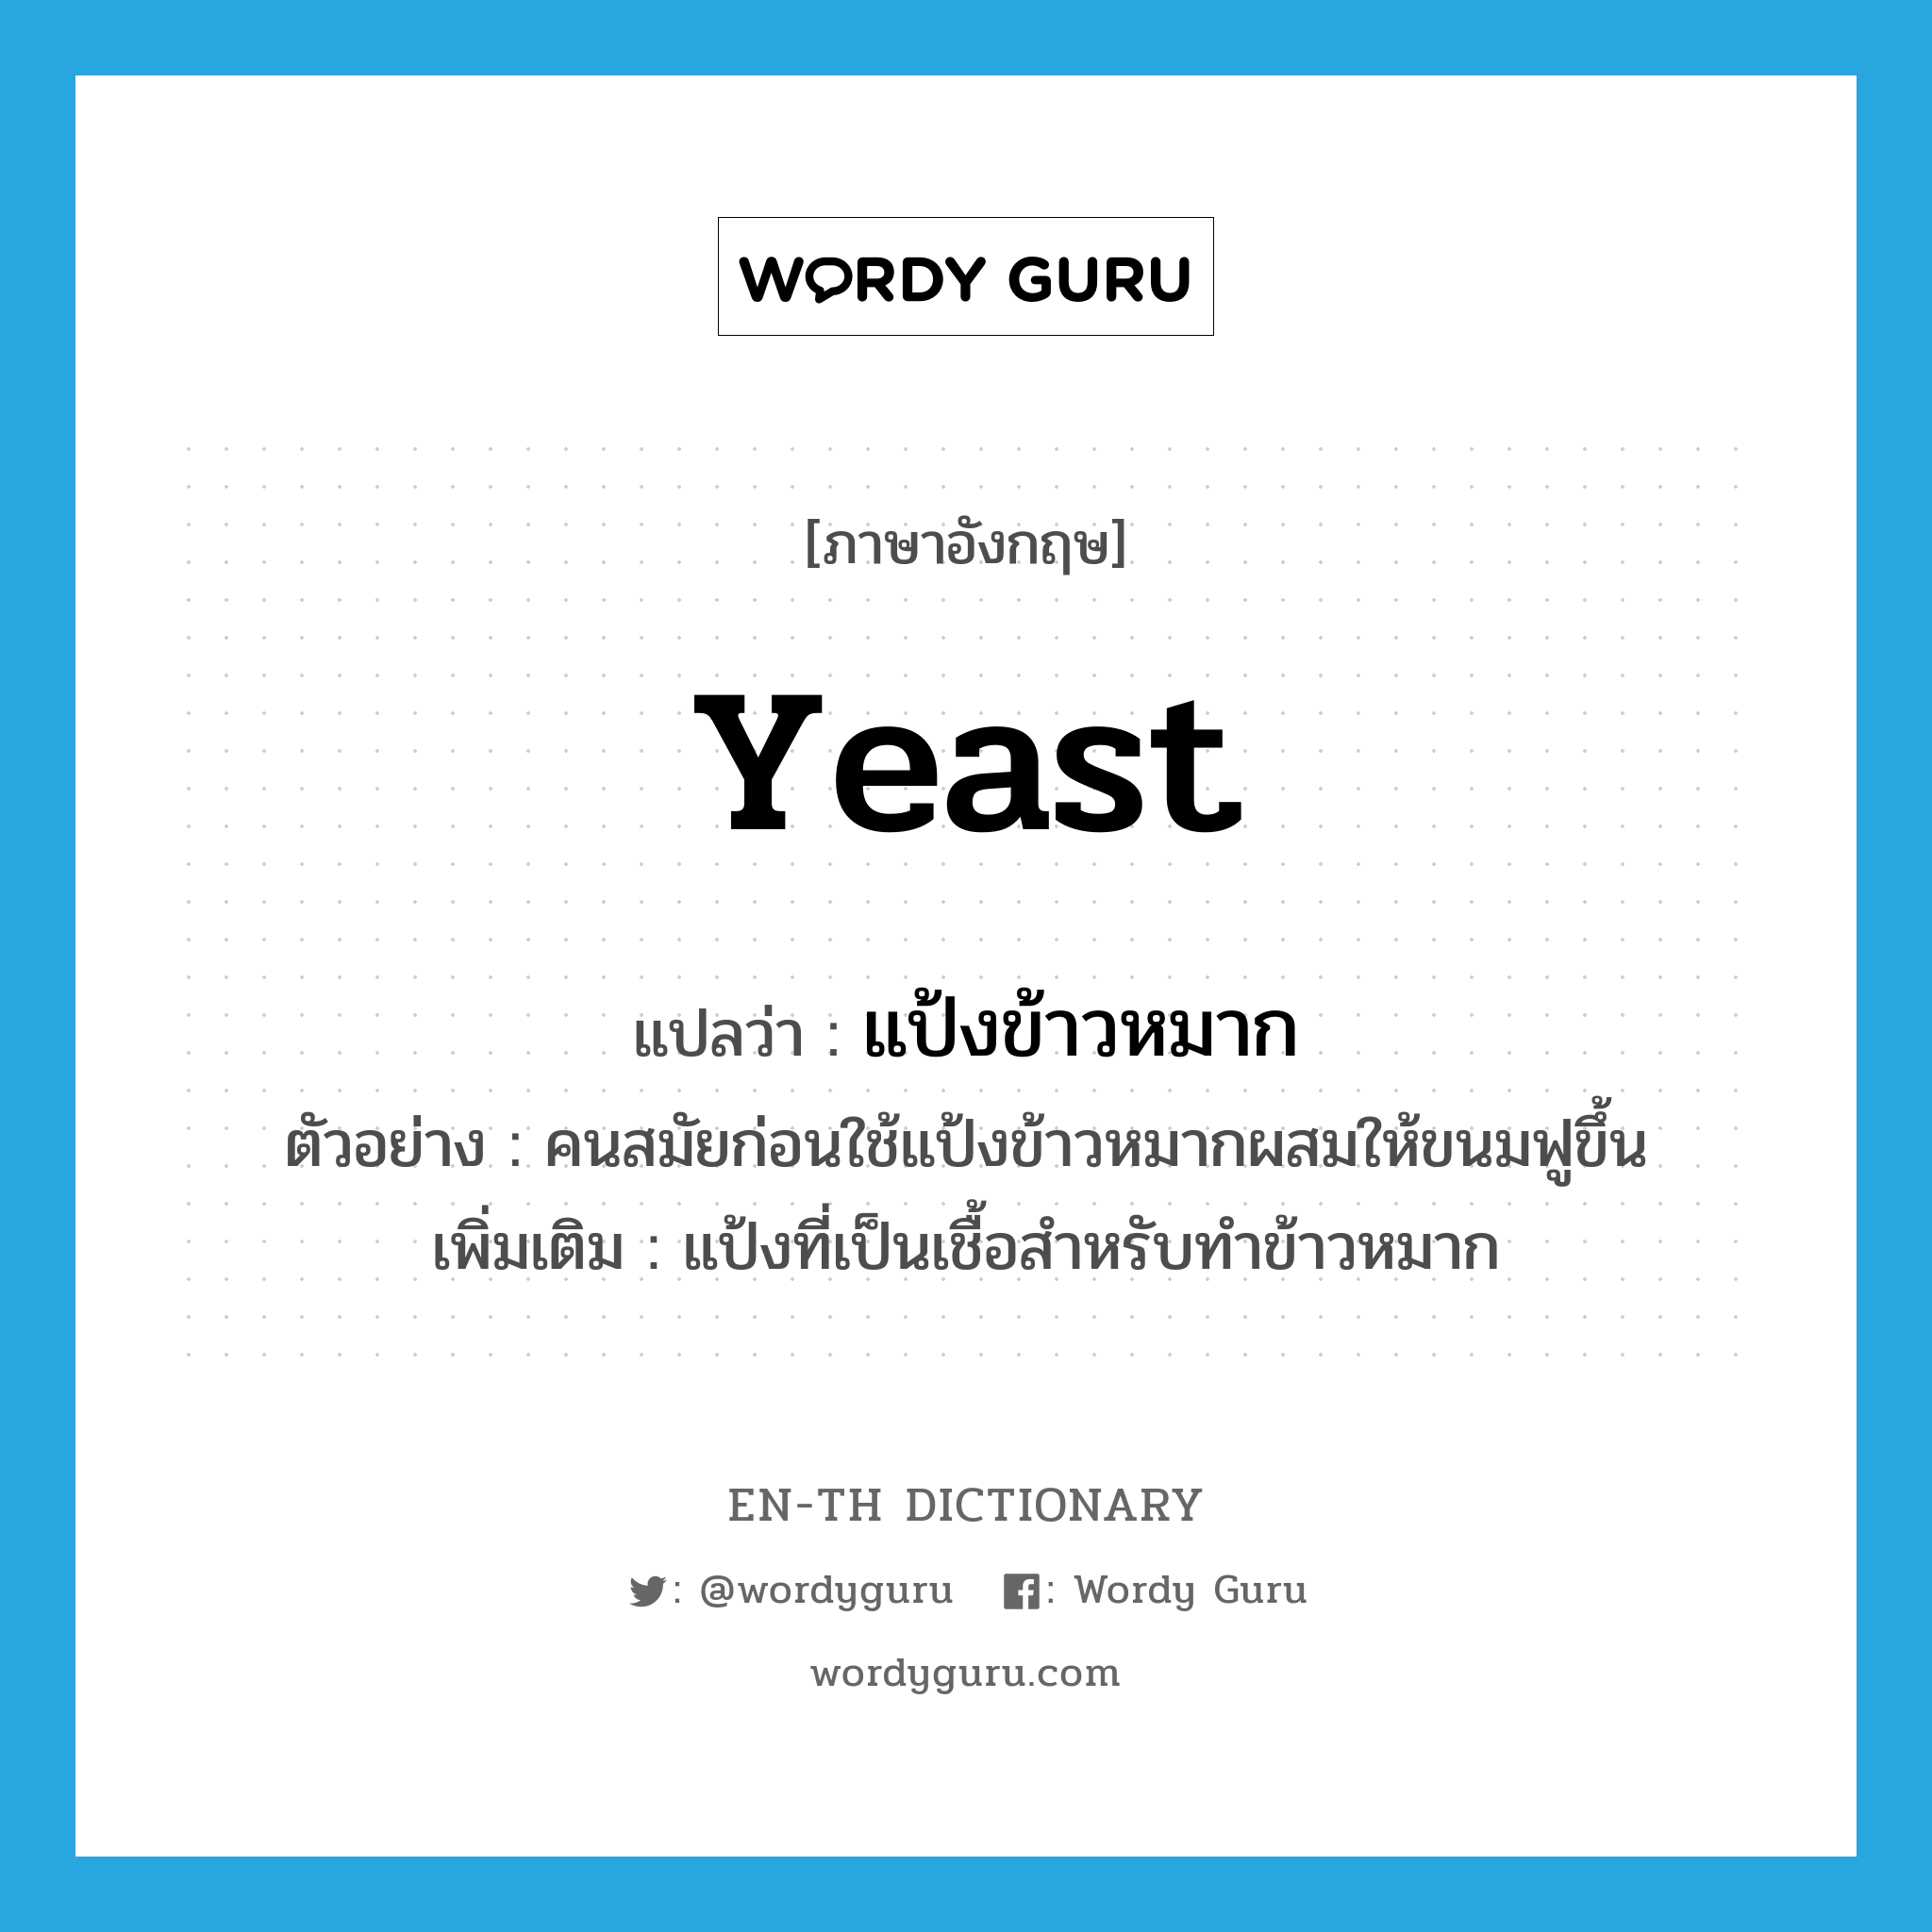 yeast แปลว่า?, คำศัพท์ภาษาอังกฤษ yeast แปลว่า แป้งข้าวหมาก ประเภท N ตัวอย่าง คนสมัยก่อนใช้แป้งข้าวหมากผสมให้ขนมฟูขึ้น เพิ่มเติม แป้งที่เป็นเชื้อสำหรับทำข้าวหมาก หมวด N